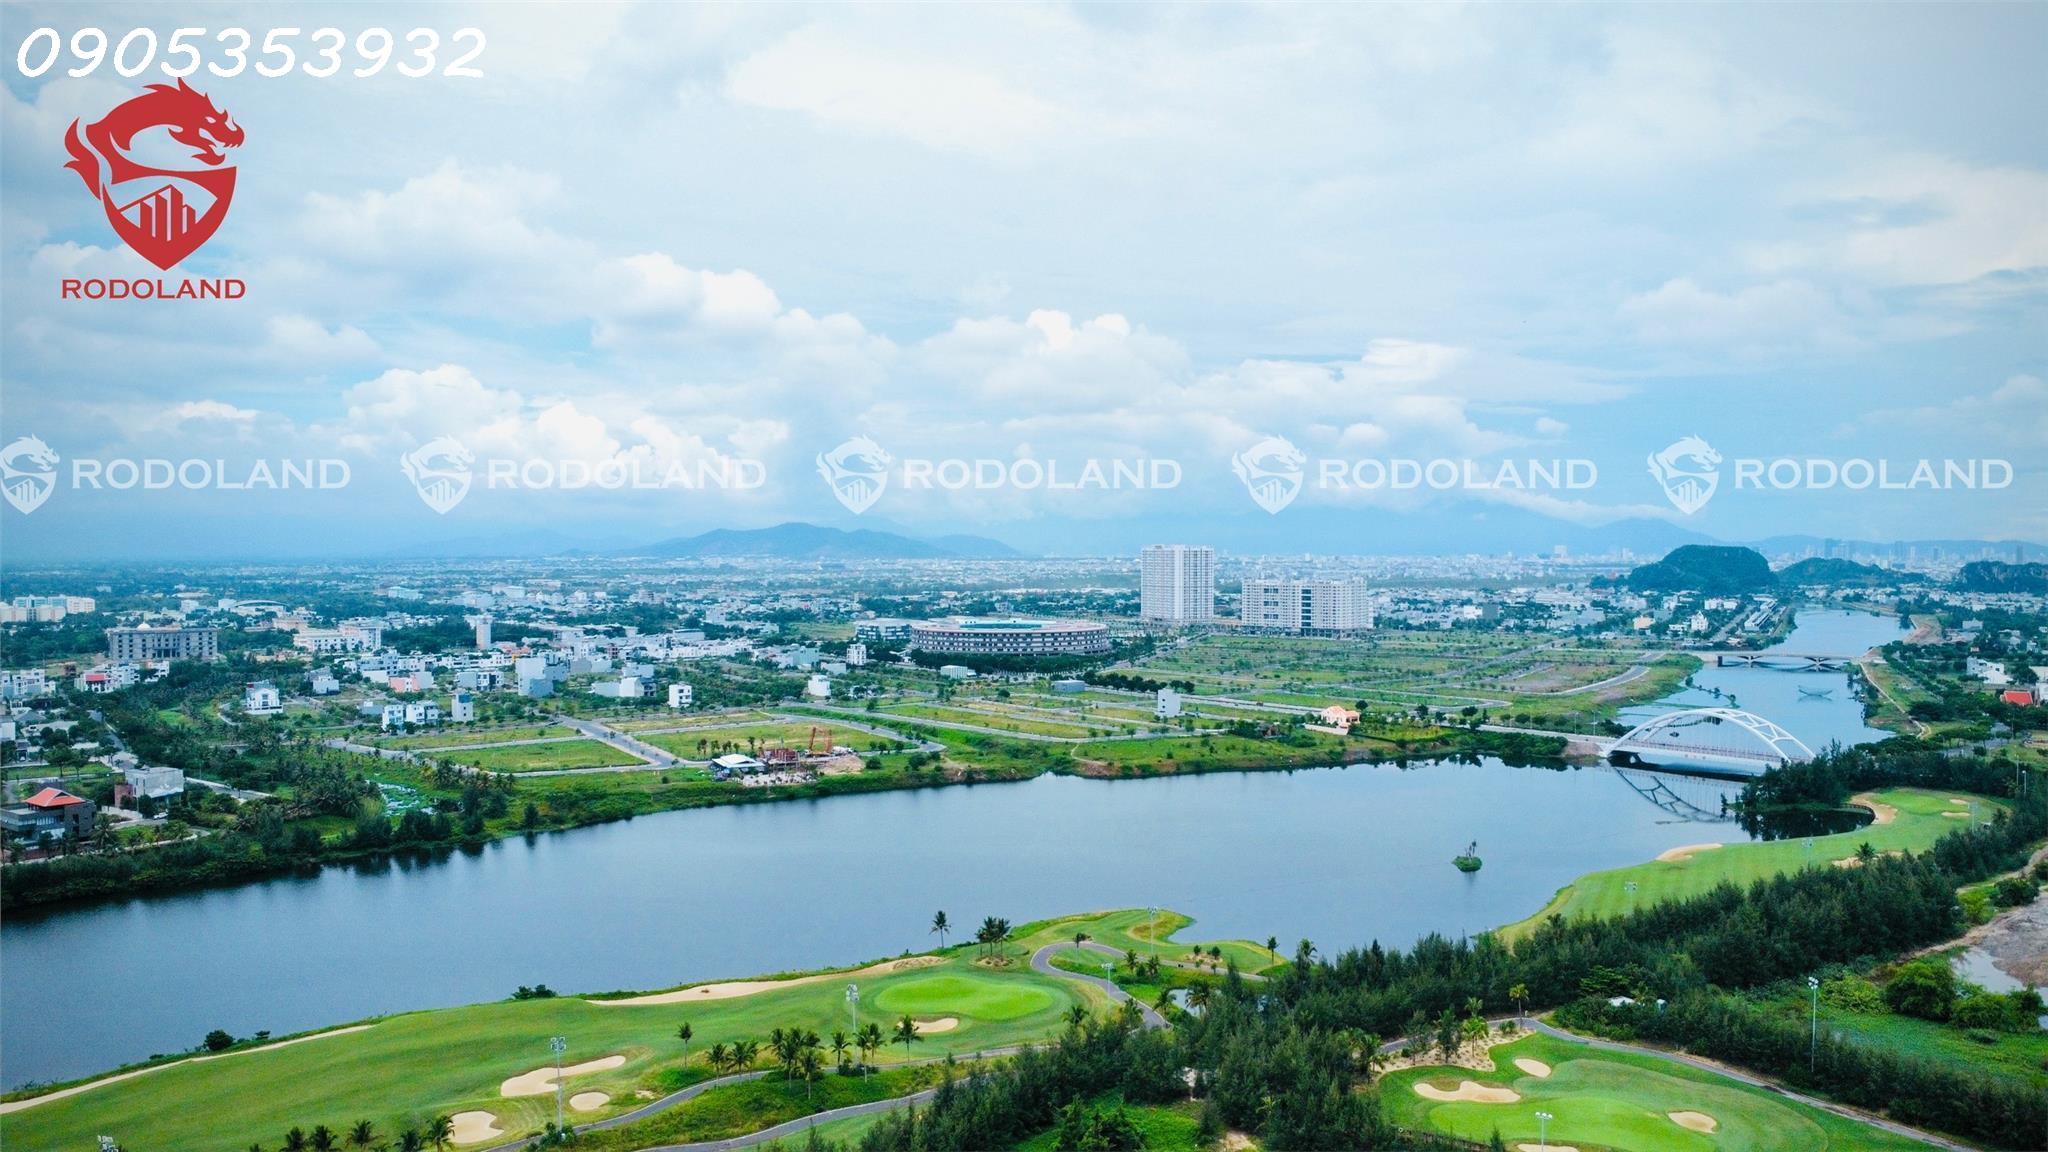 Bán nhanh đất FPT view công viên, sát Đại học FPT Đà Nẵng. Liên hệ: 0905.31.89.88 2